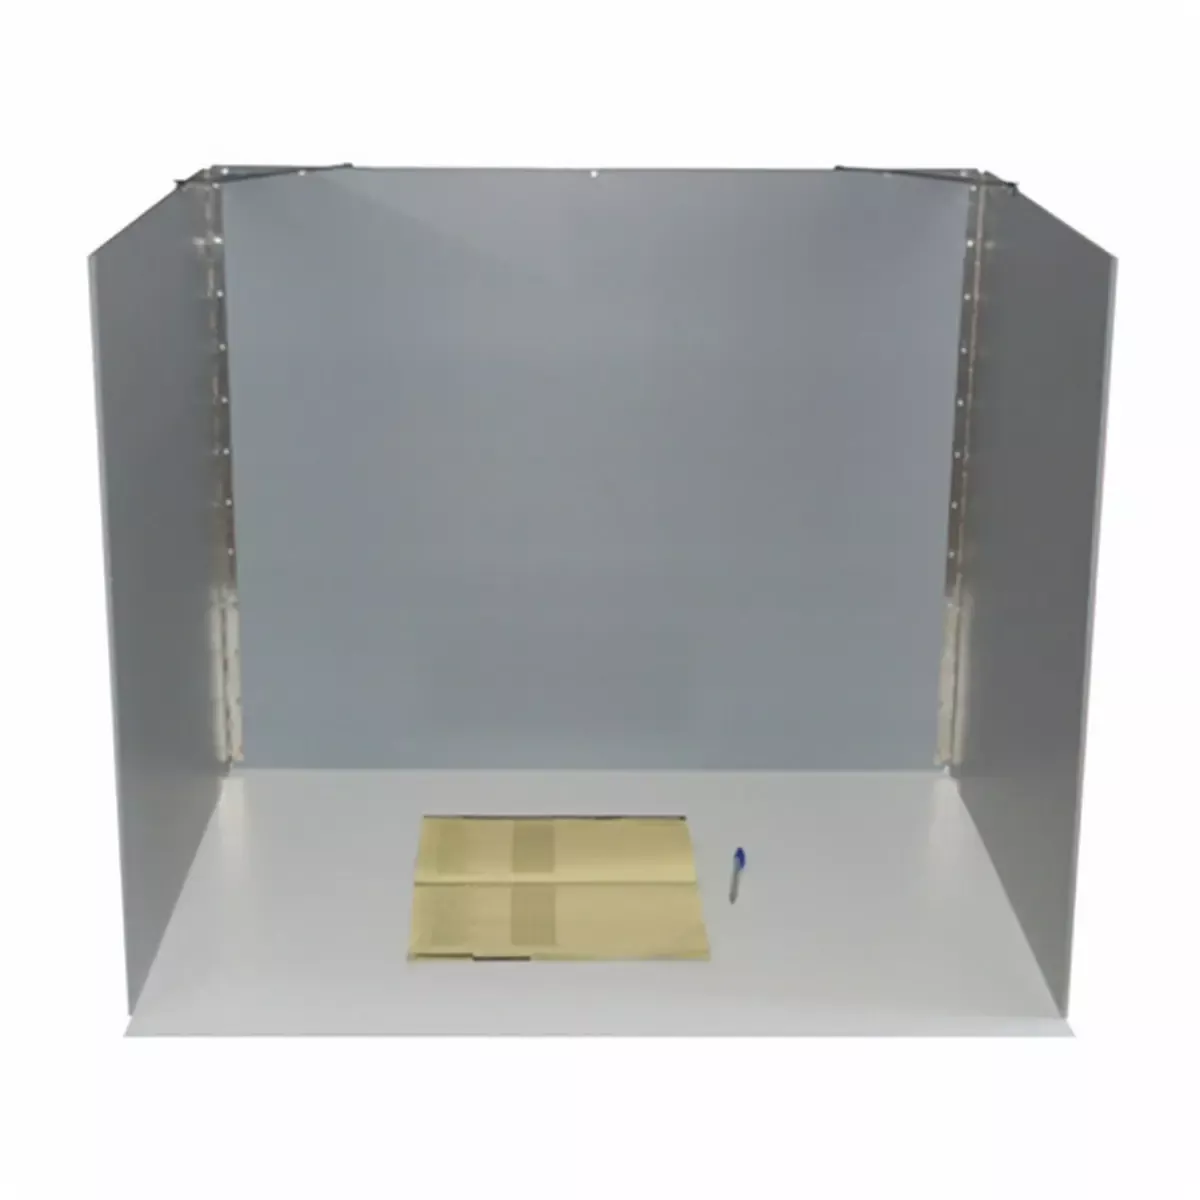 Tisch-Wahlkabine aus Kunststoff, H.70 x B.85 x T.70 cm, hellgrau